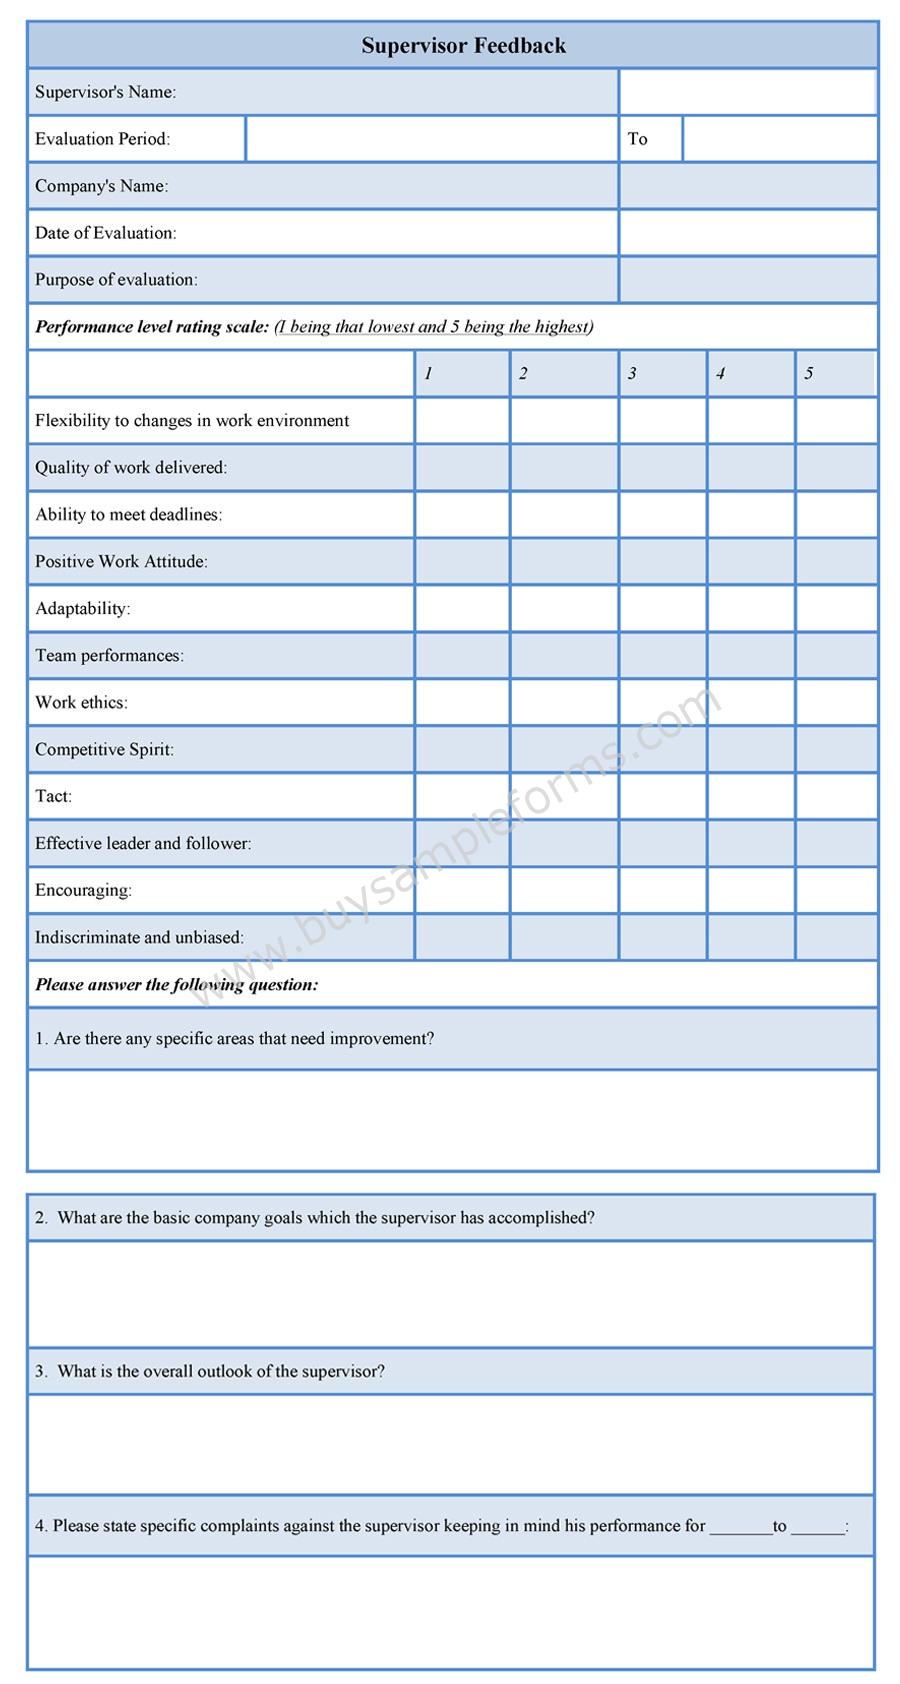 Supervisor Feedback Form Sample Forms